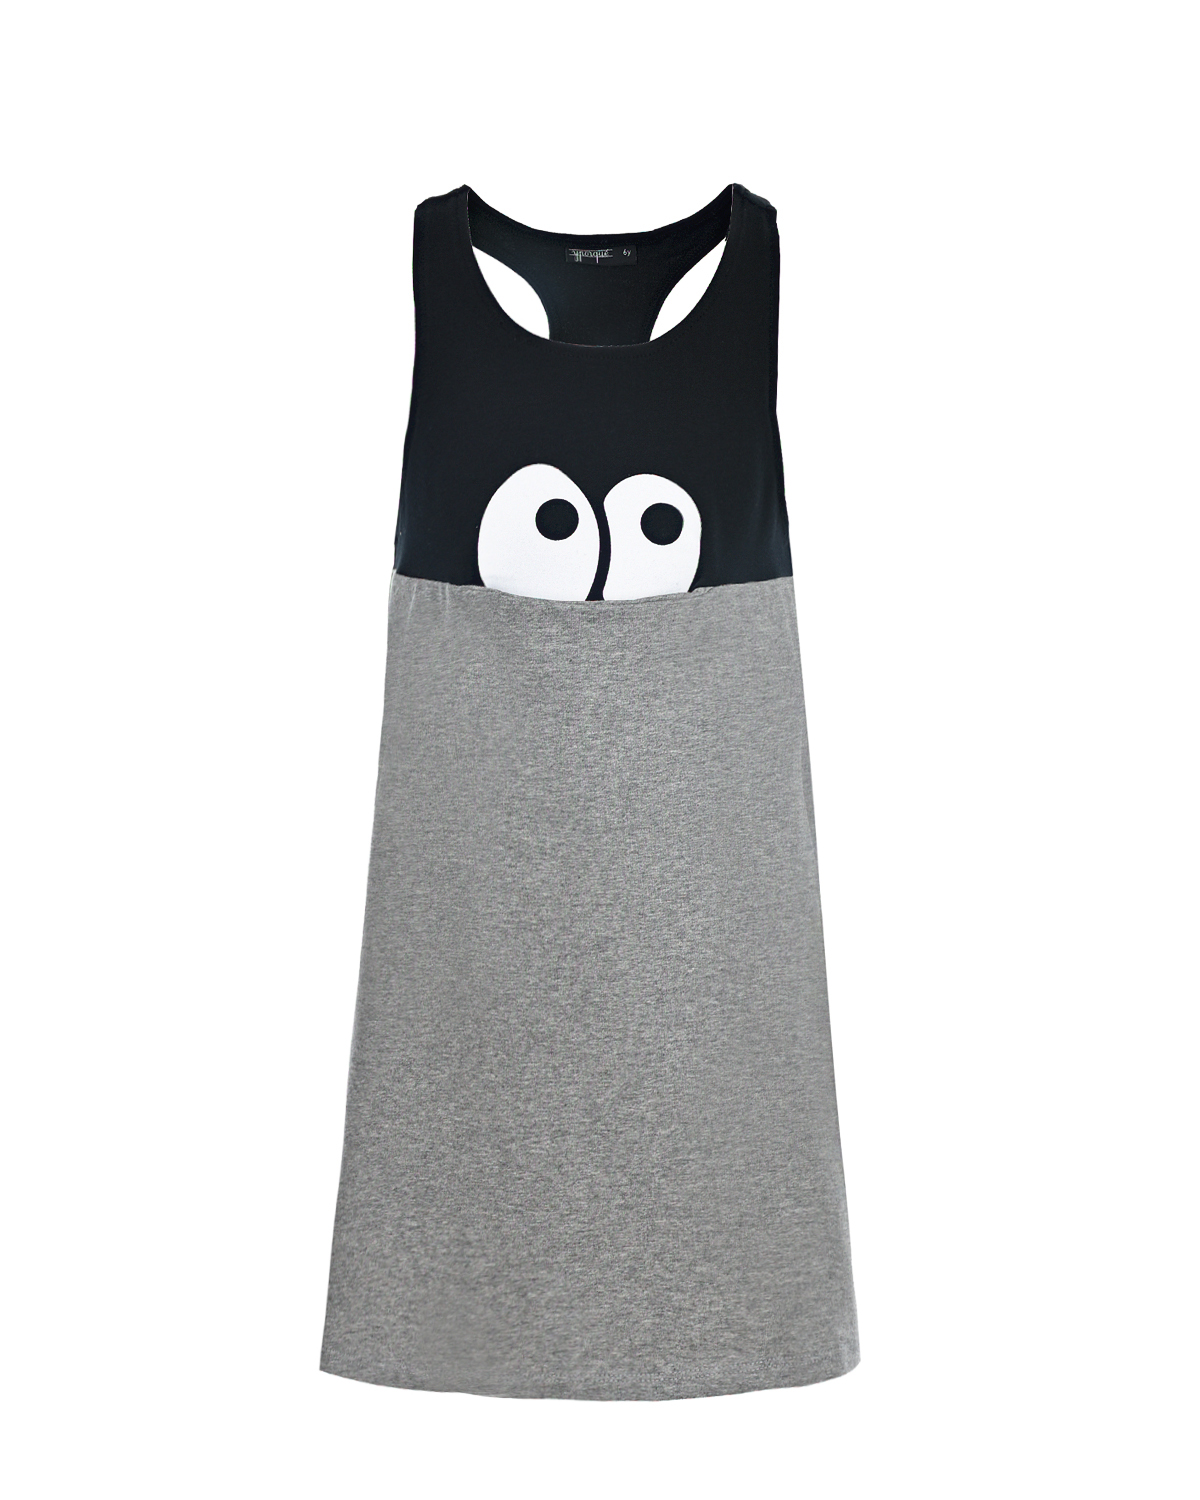 Платье из хлопка с принтом "Глаза" Yporque детское, размер 92, цвет серый - фото 1